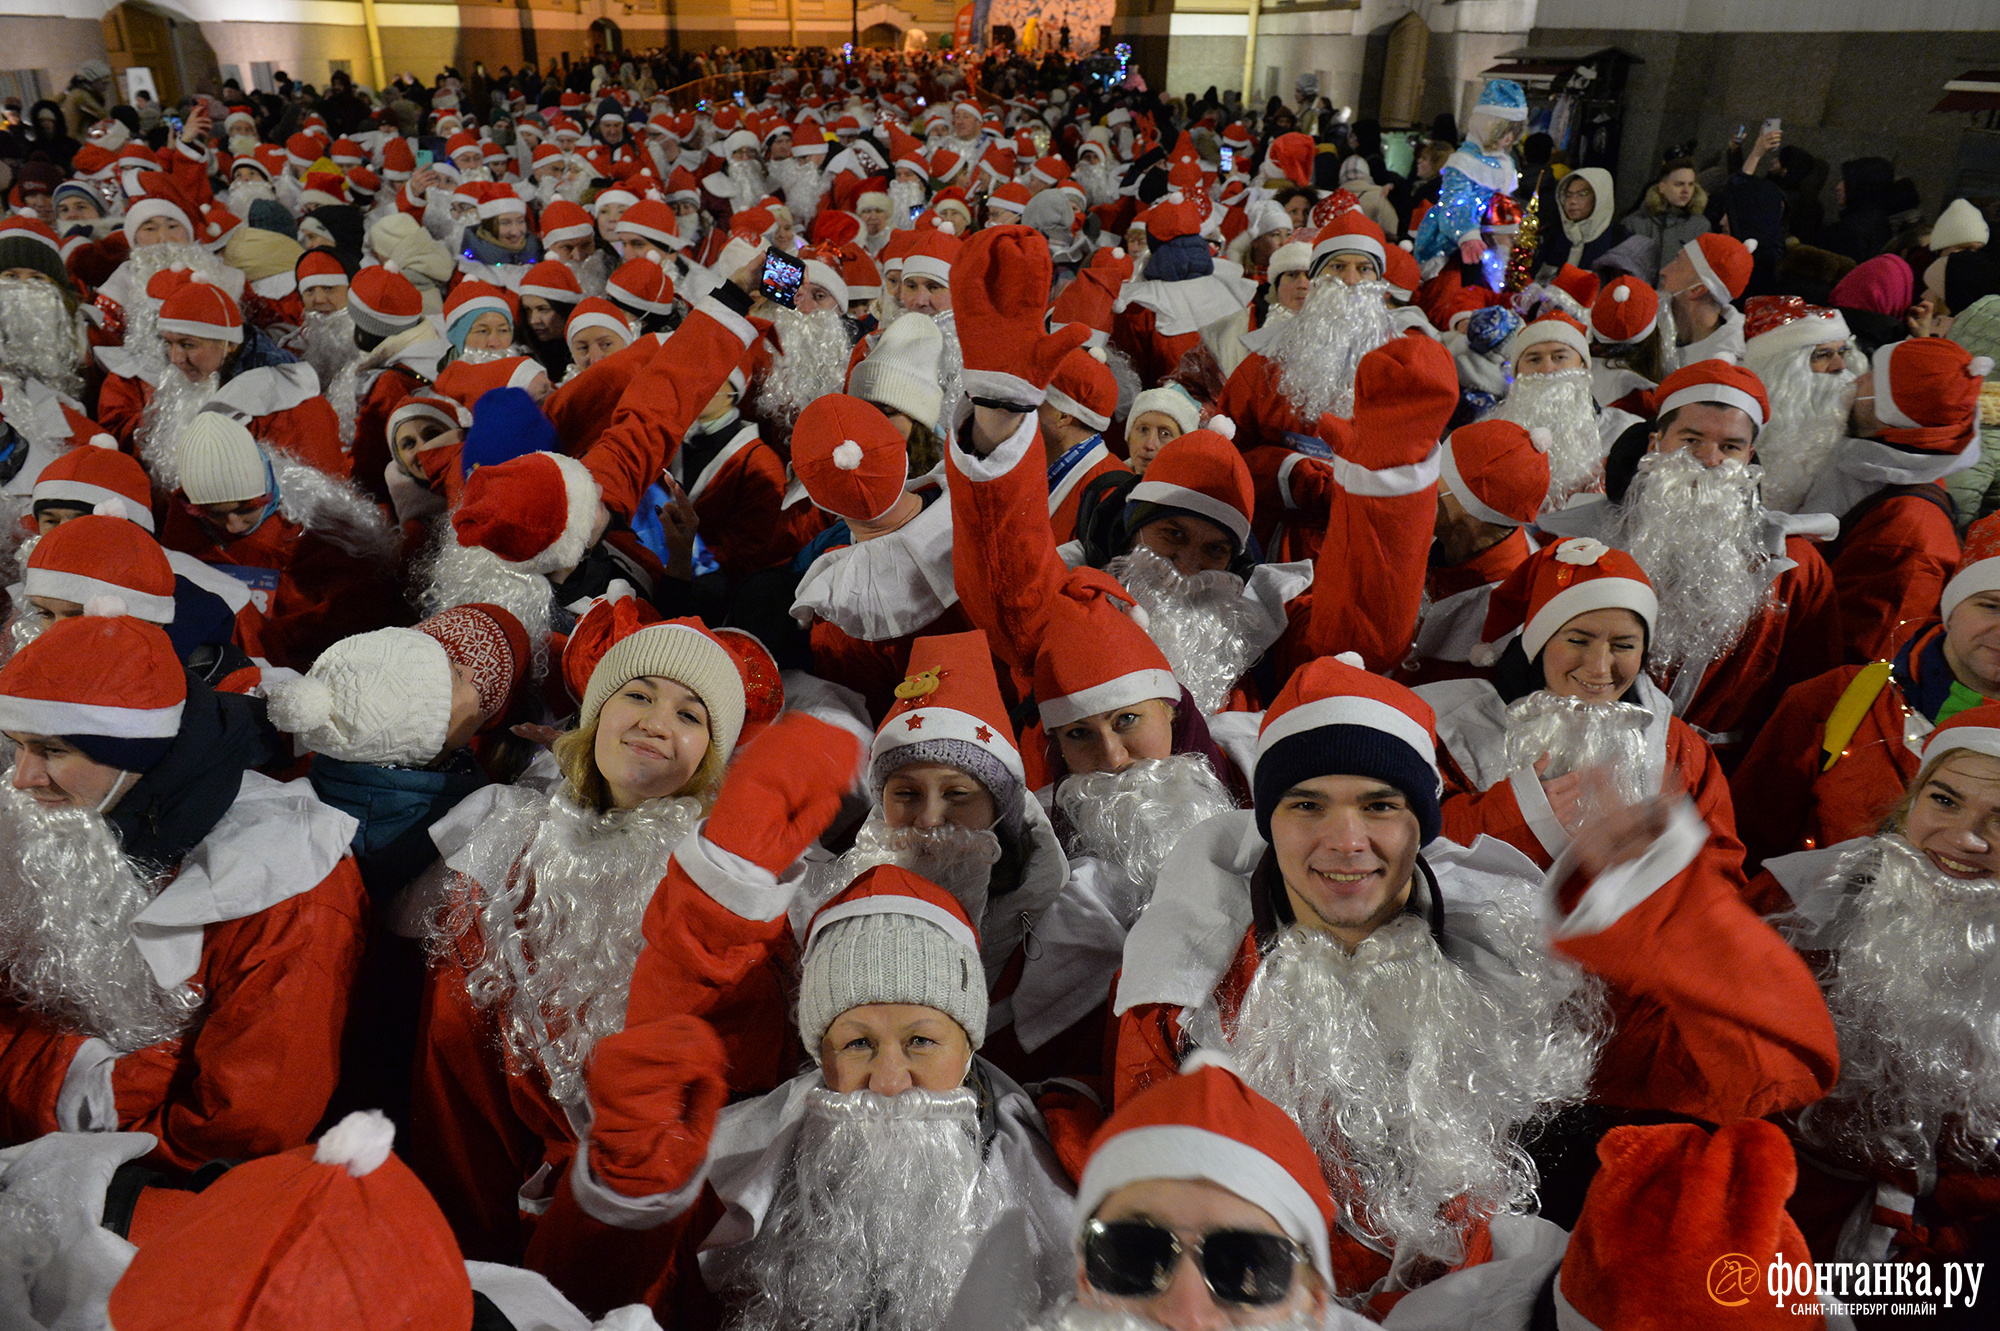 Сотни Дедов Морозов на Дворцовой отправились в забег. Бороду получали на месте